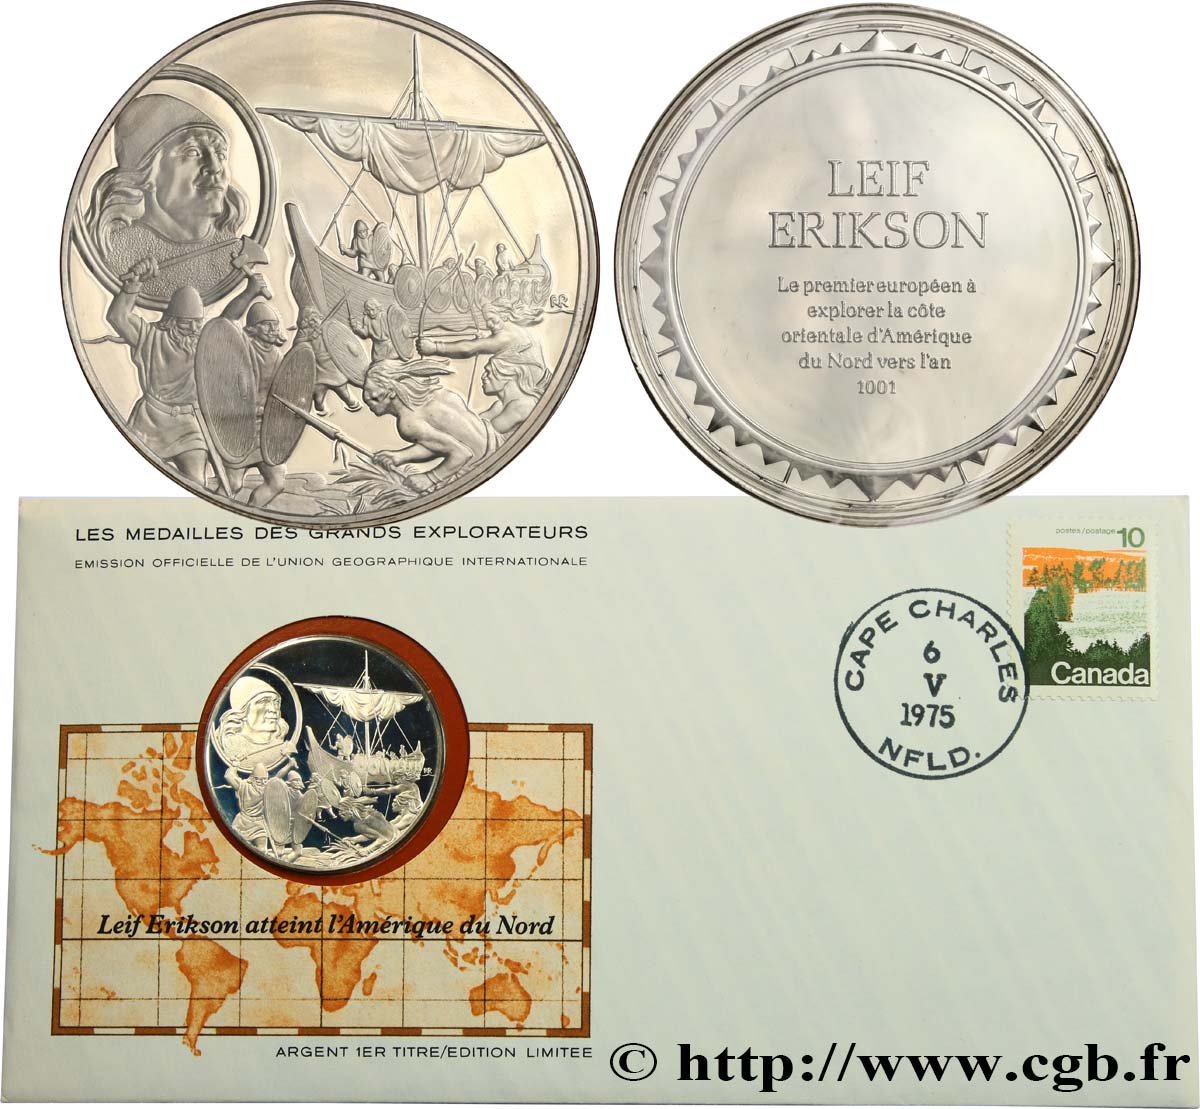 LES MÉDAILLES DES GRANDS EXPLORATEURS Enveloppe “Timbre médaille”, Leif Erikson atteint l’Amérique du Nord SPL